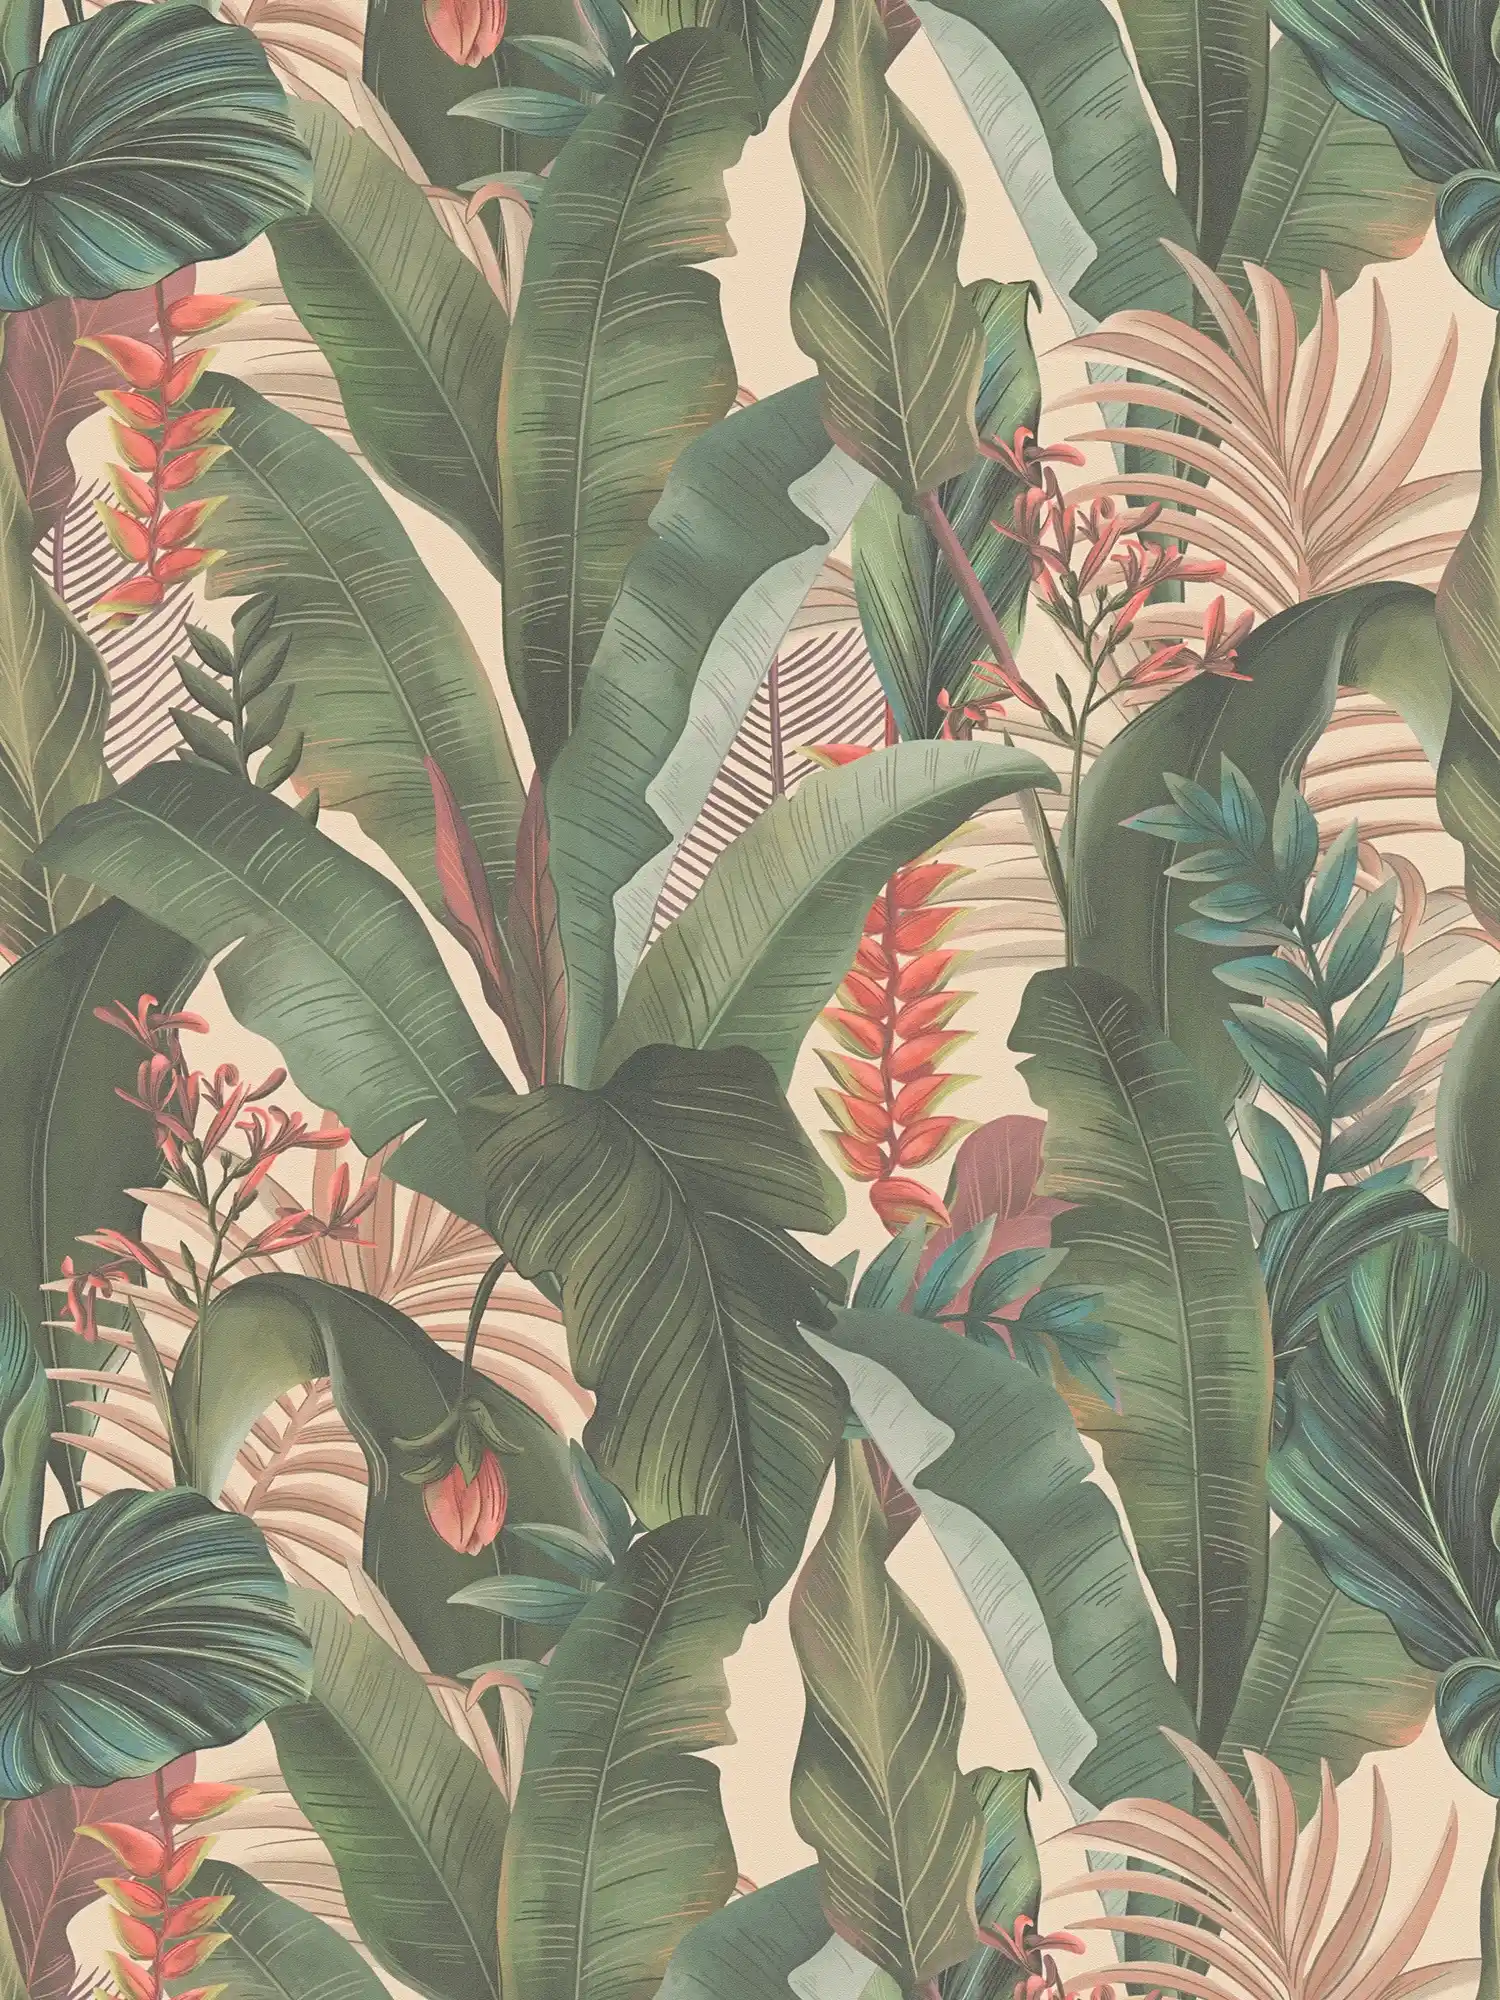         papier peint en papier jungle avec feuilles de palmier & fleurs de style floral structuré mat - beige, vert, rose
    